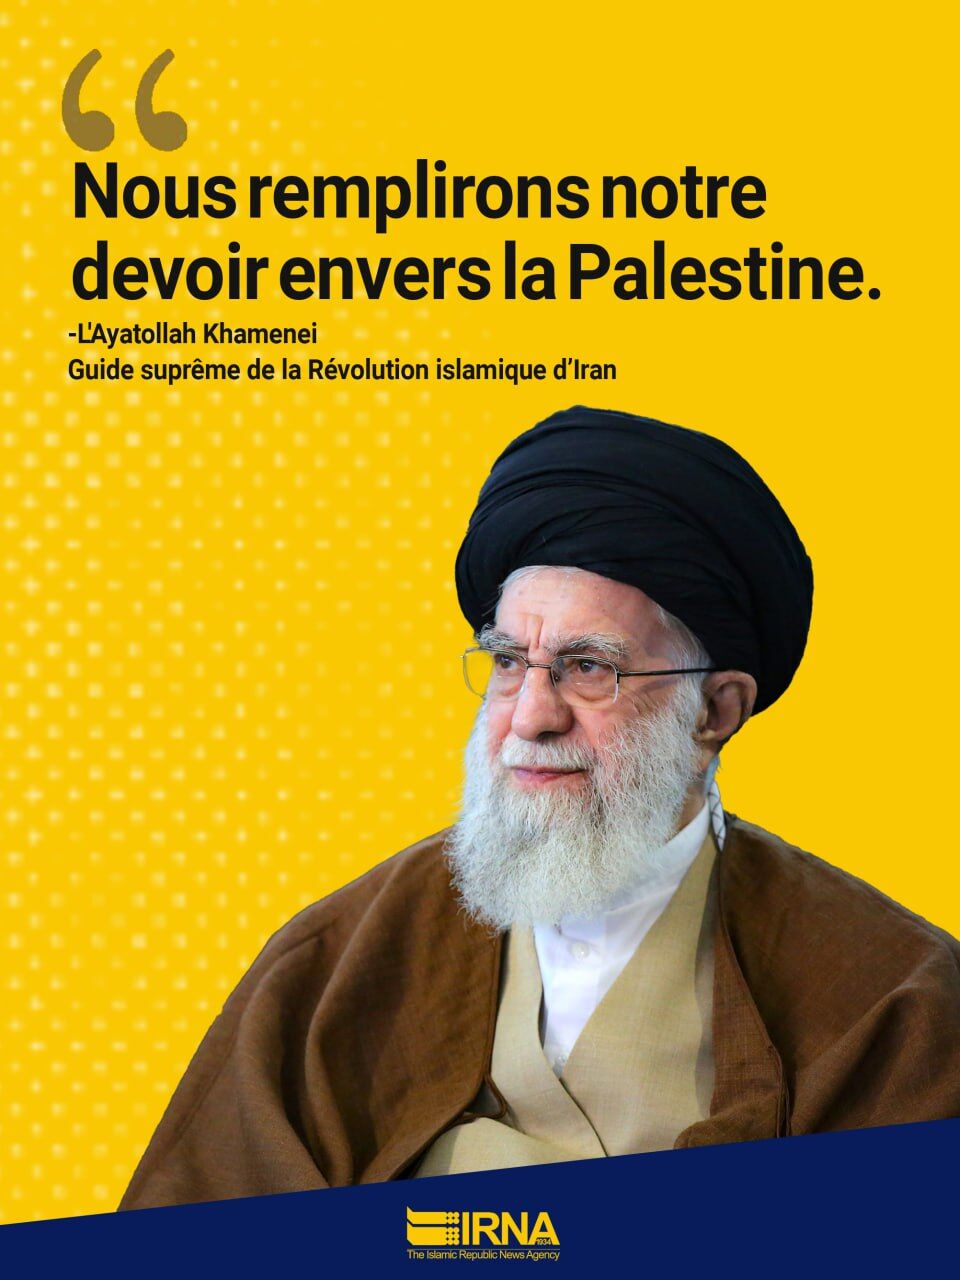 Nous remplissons notre devoir envers la Palestine (l’ayatollah Khamenei)